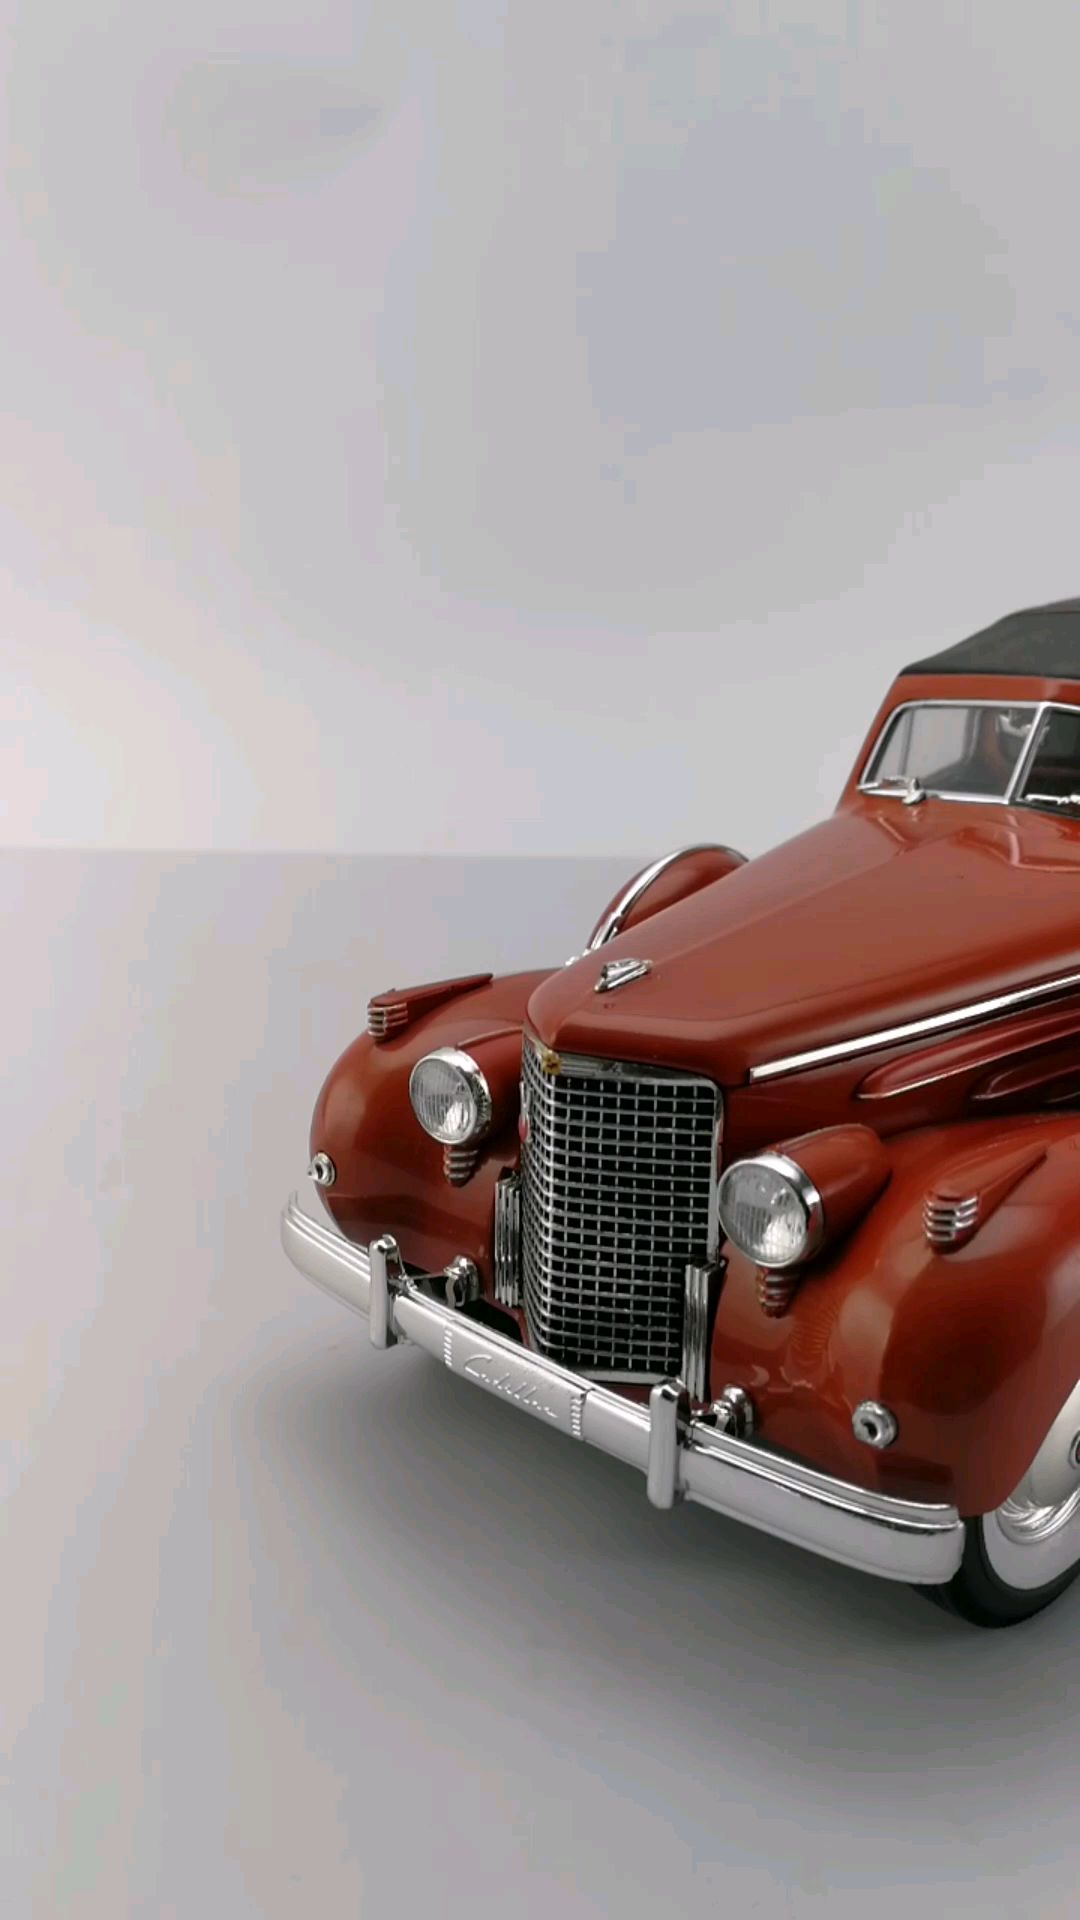 1938凯迪拉克v16豪华轿车,1:18,东晓汽车模型收藏馆藏品.